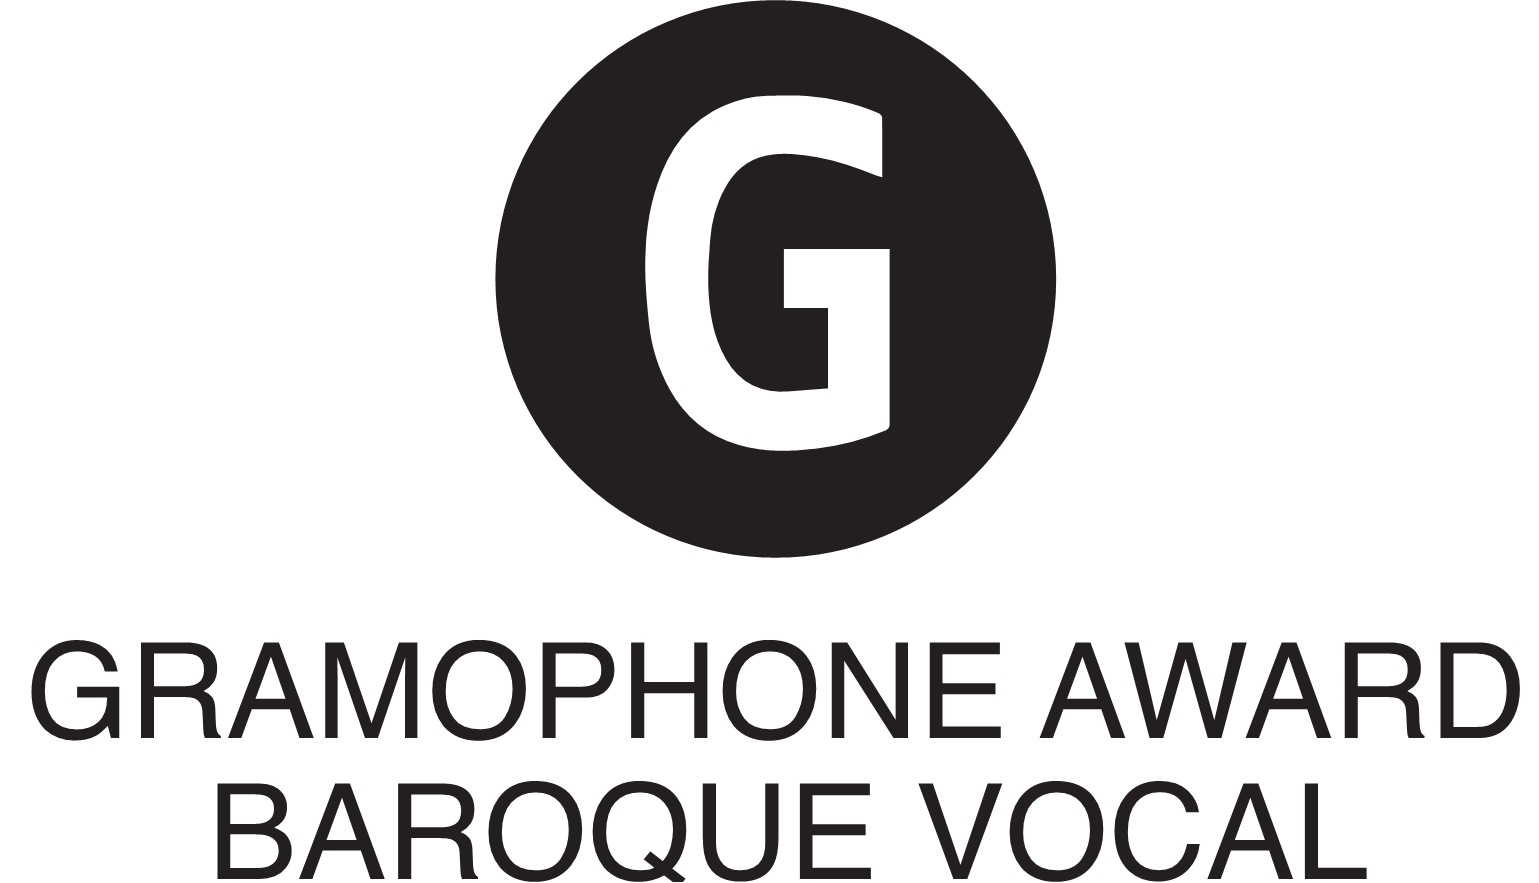 Gramophone Award: 'Baroque Vocal' (2013)